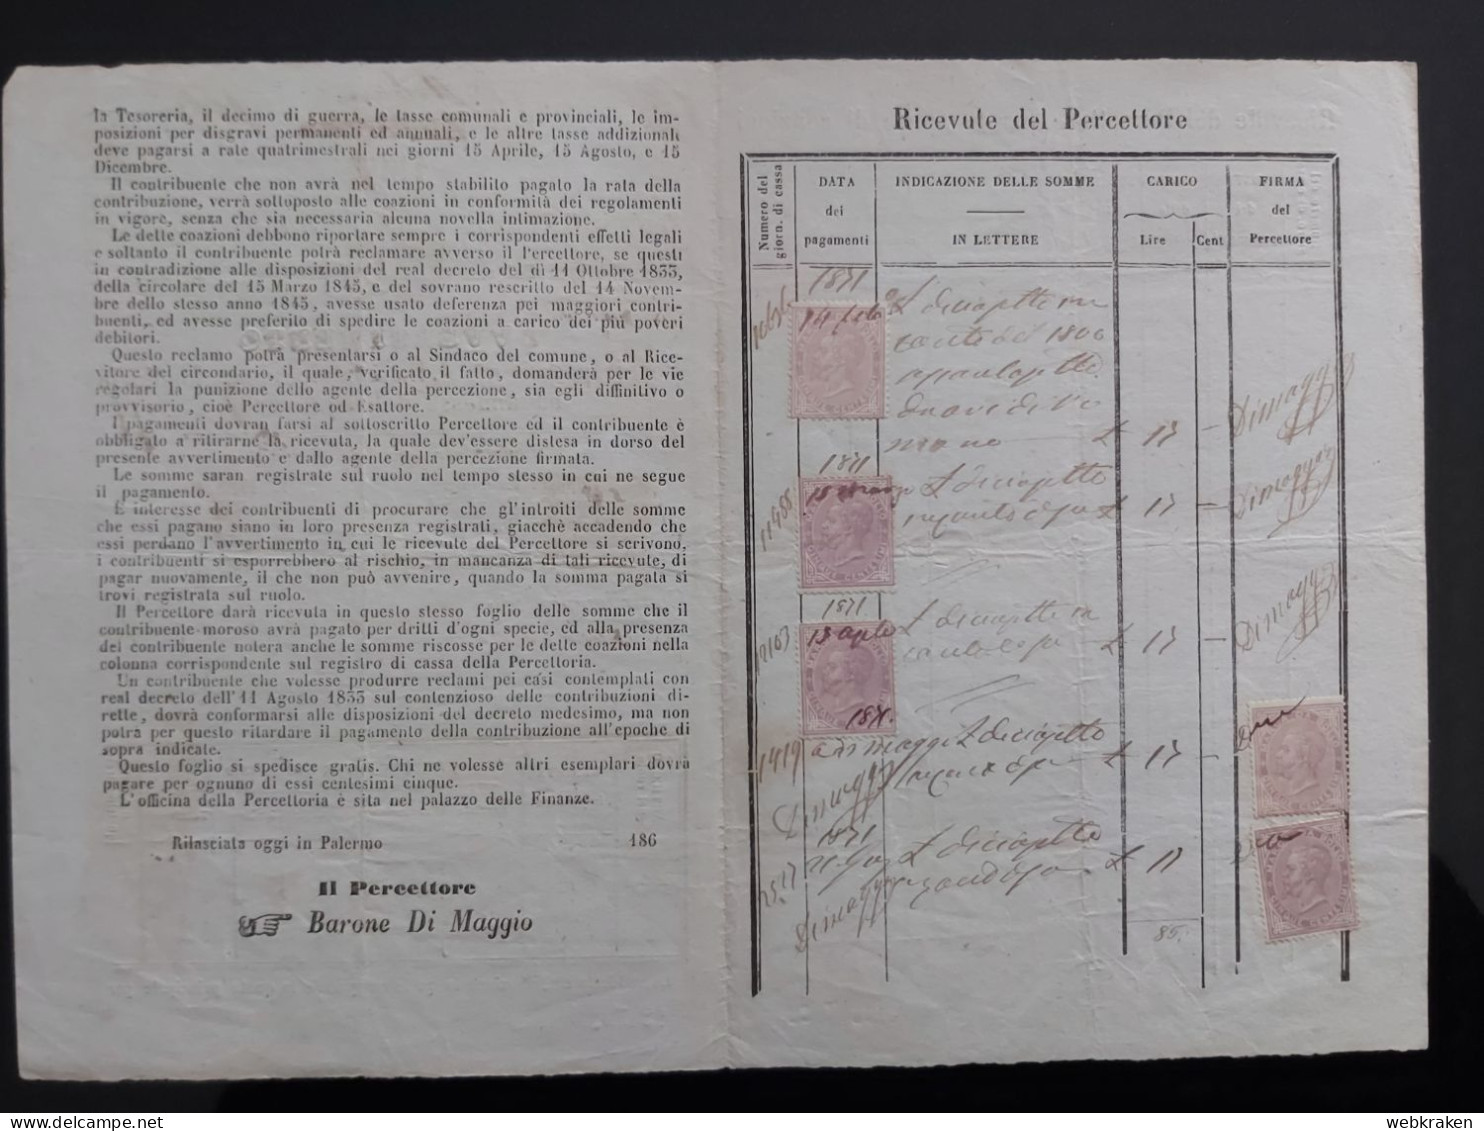 ITALY PALERMO 1867 VECCHIO DOCUMENTO RUSTICANO CON MARCHE FISCALI POSTAL REVENUE - Historical Documents